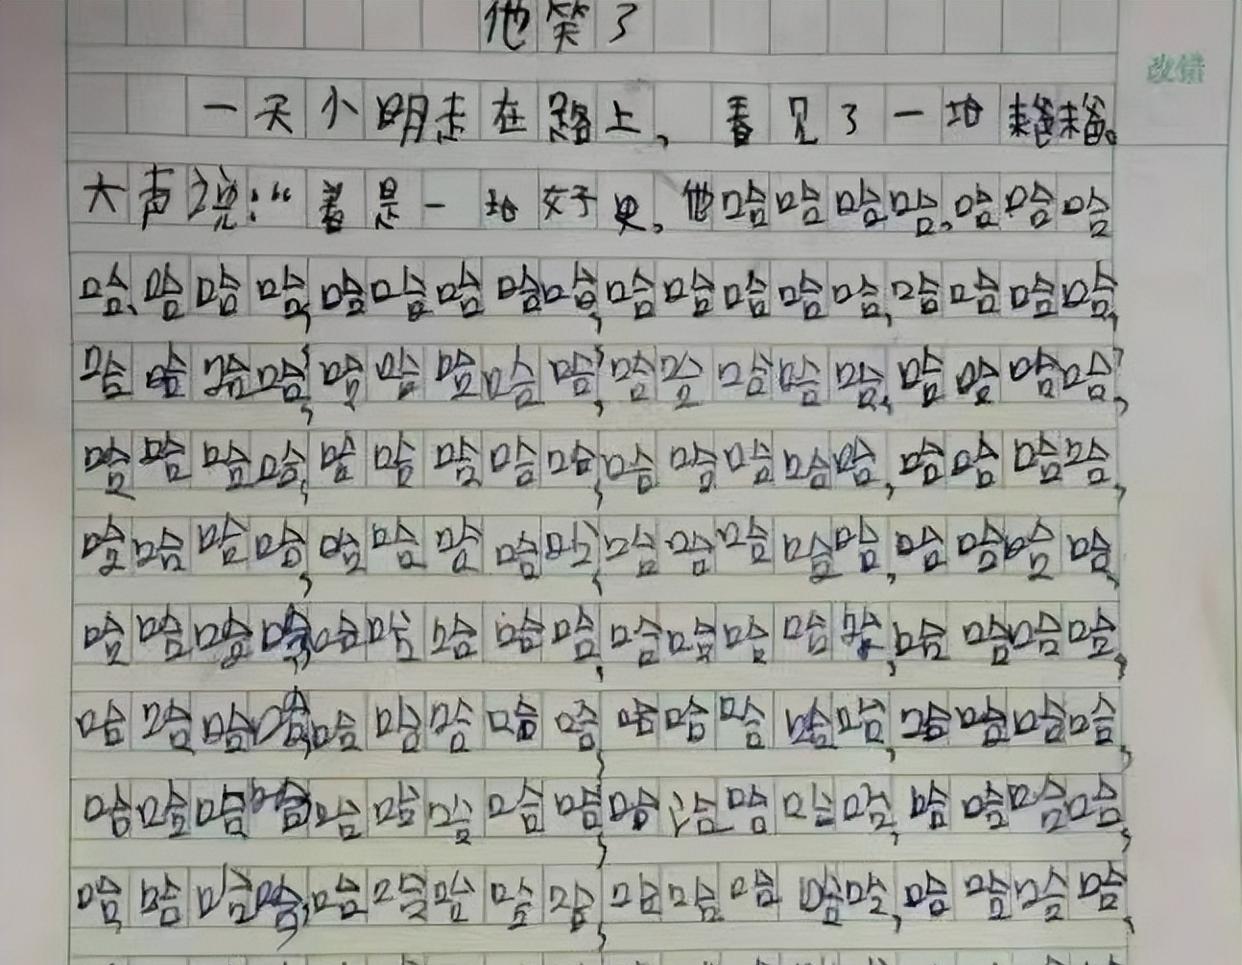 学生玩梗把蔡徐坤写进作文, 老师给零分表明态度, 属时笑不活了